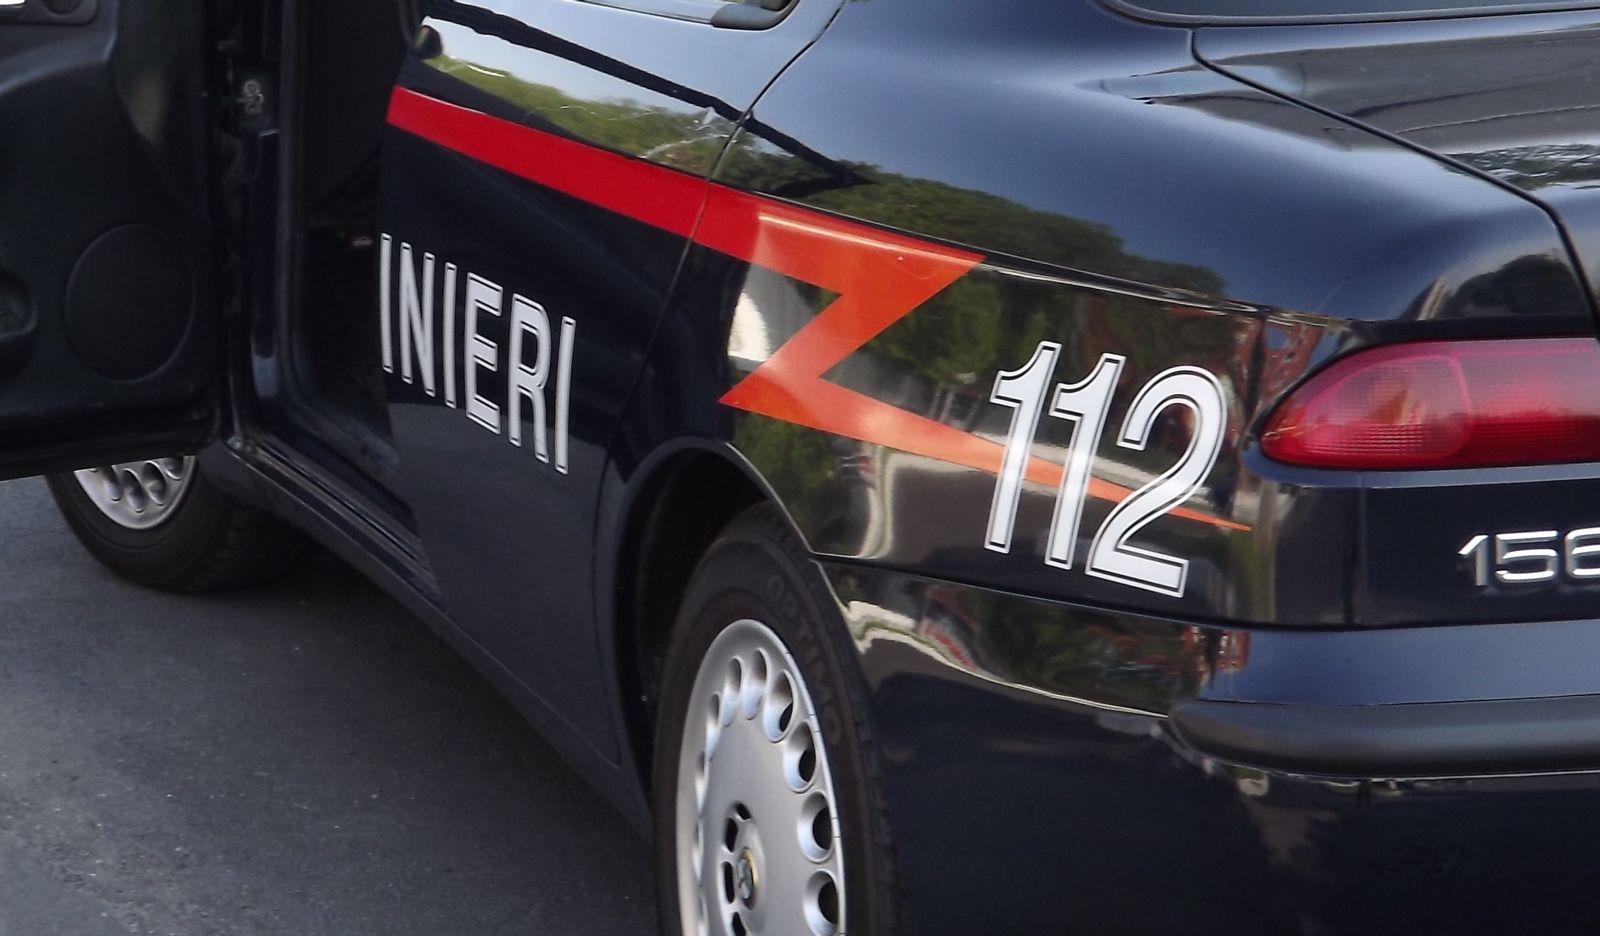  Attentato contro la caserma dei carabinieri a Secondigliano: catturato a Qualiano Umberto Accurso